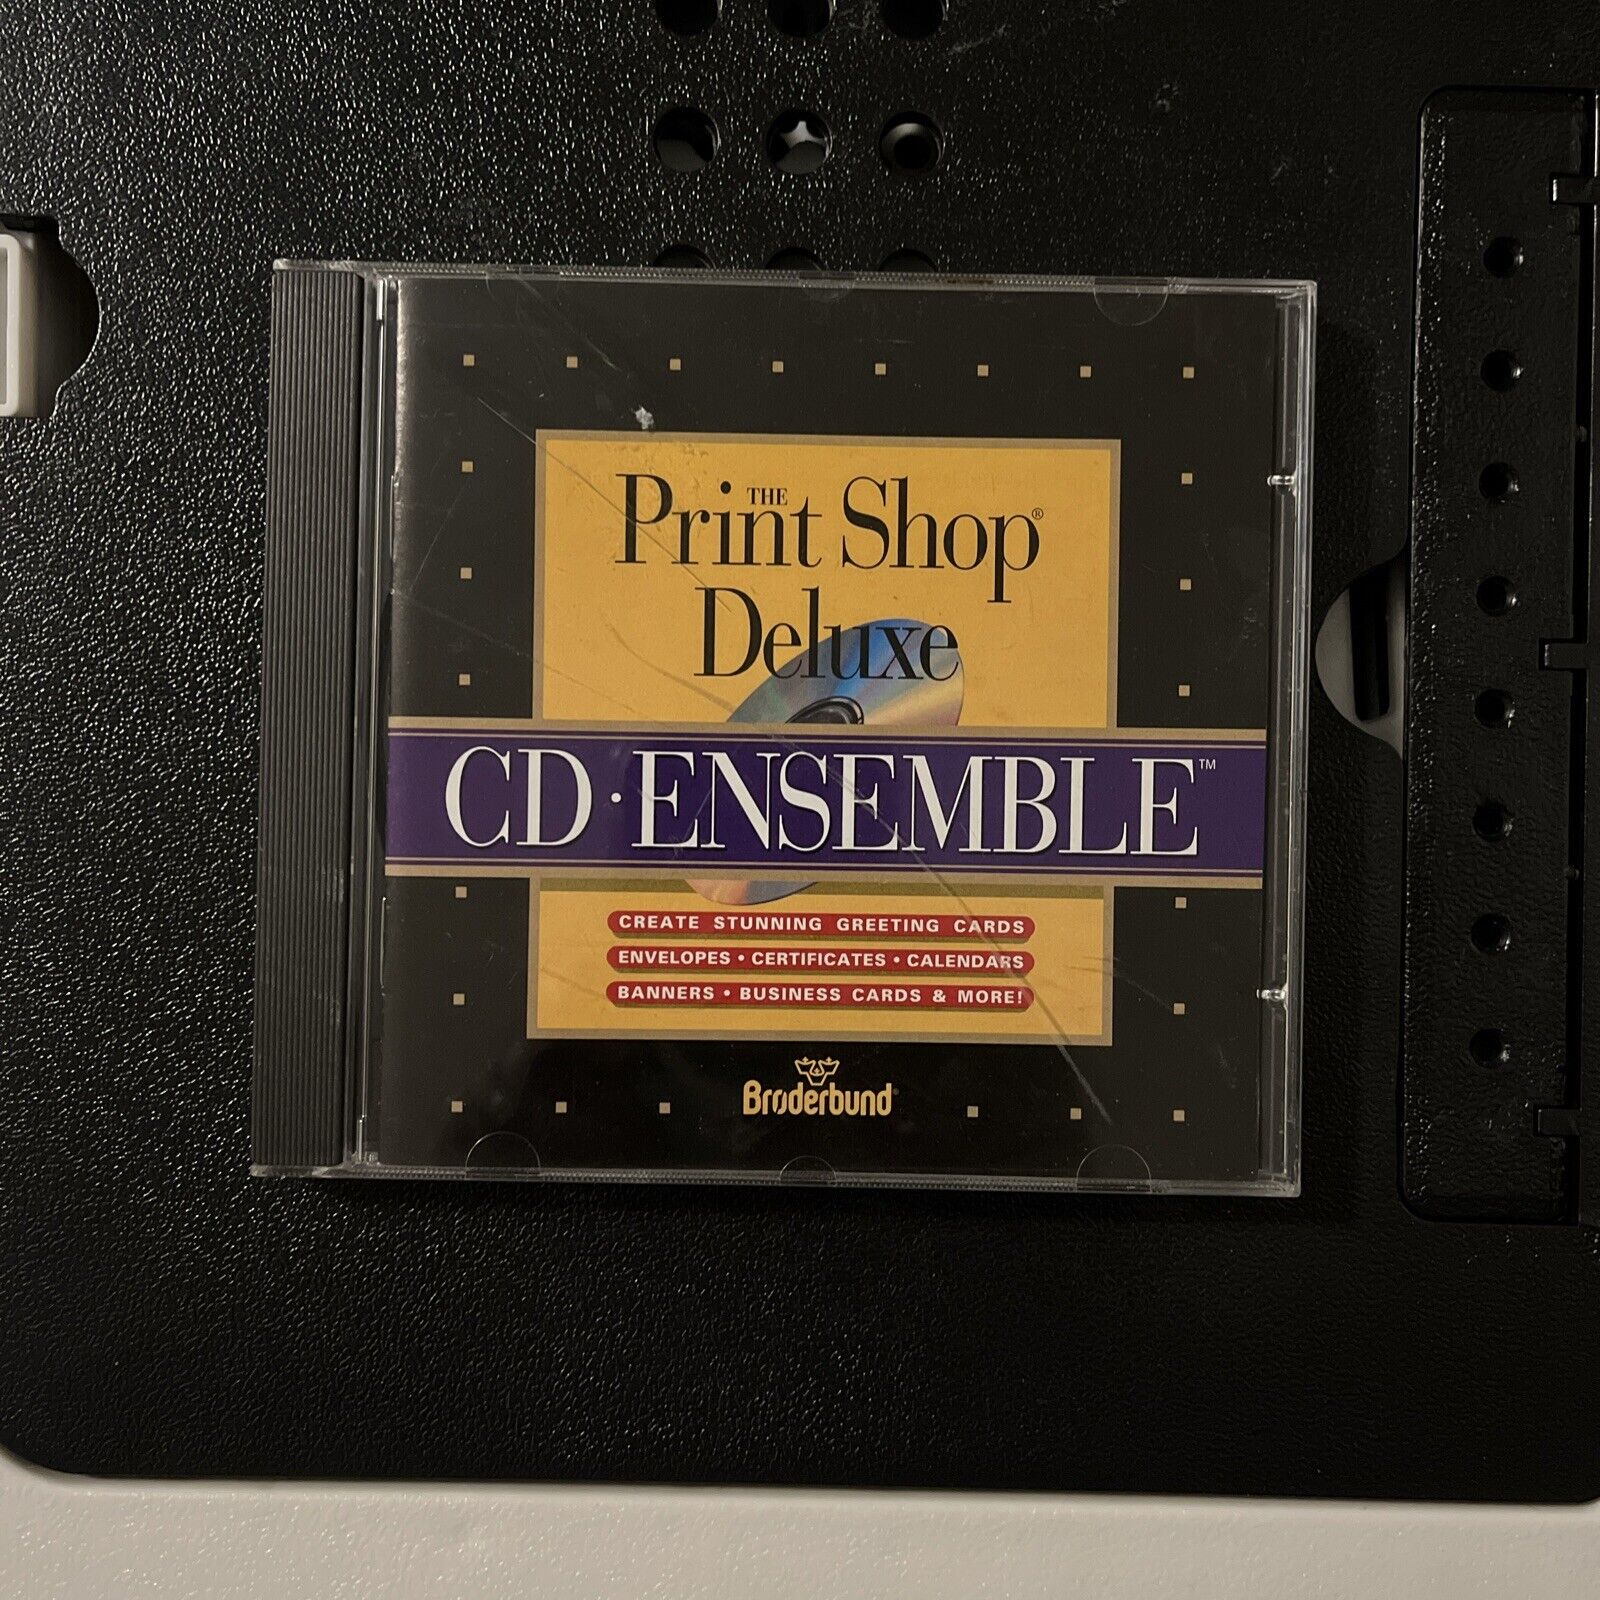 The Print Shop Deluxe CD Ensemble Brøderbund Software For Vintage Computers